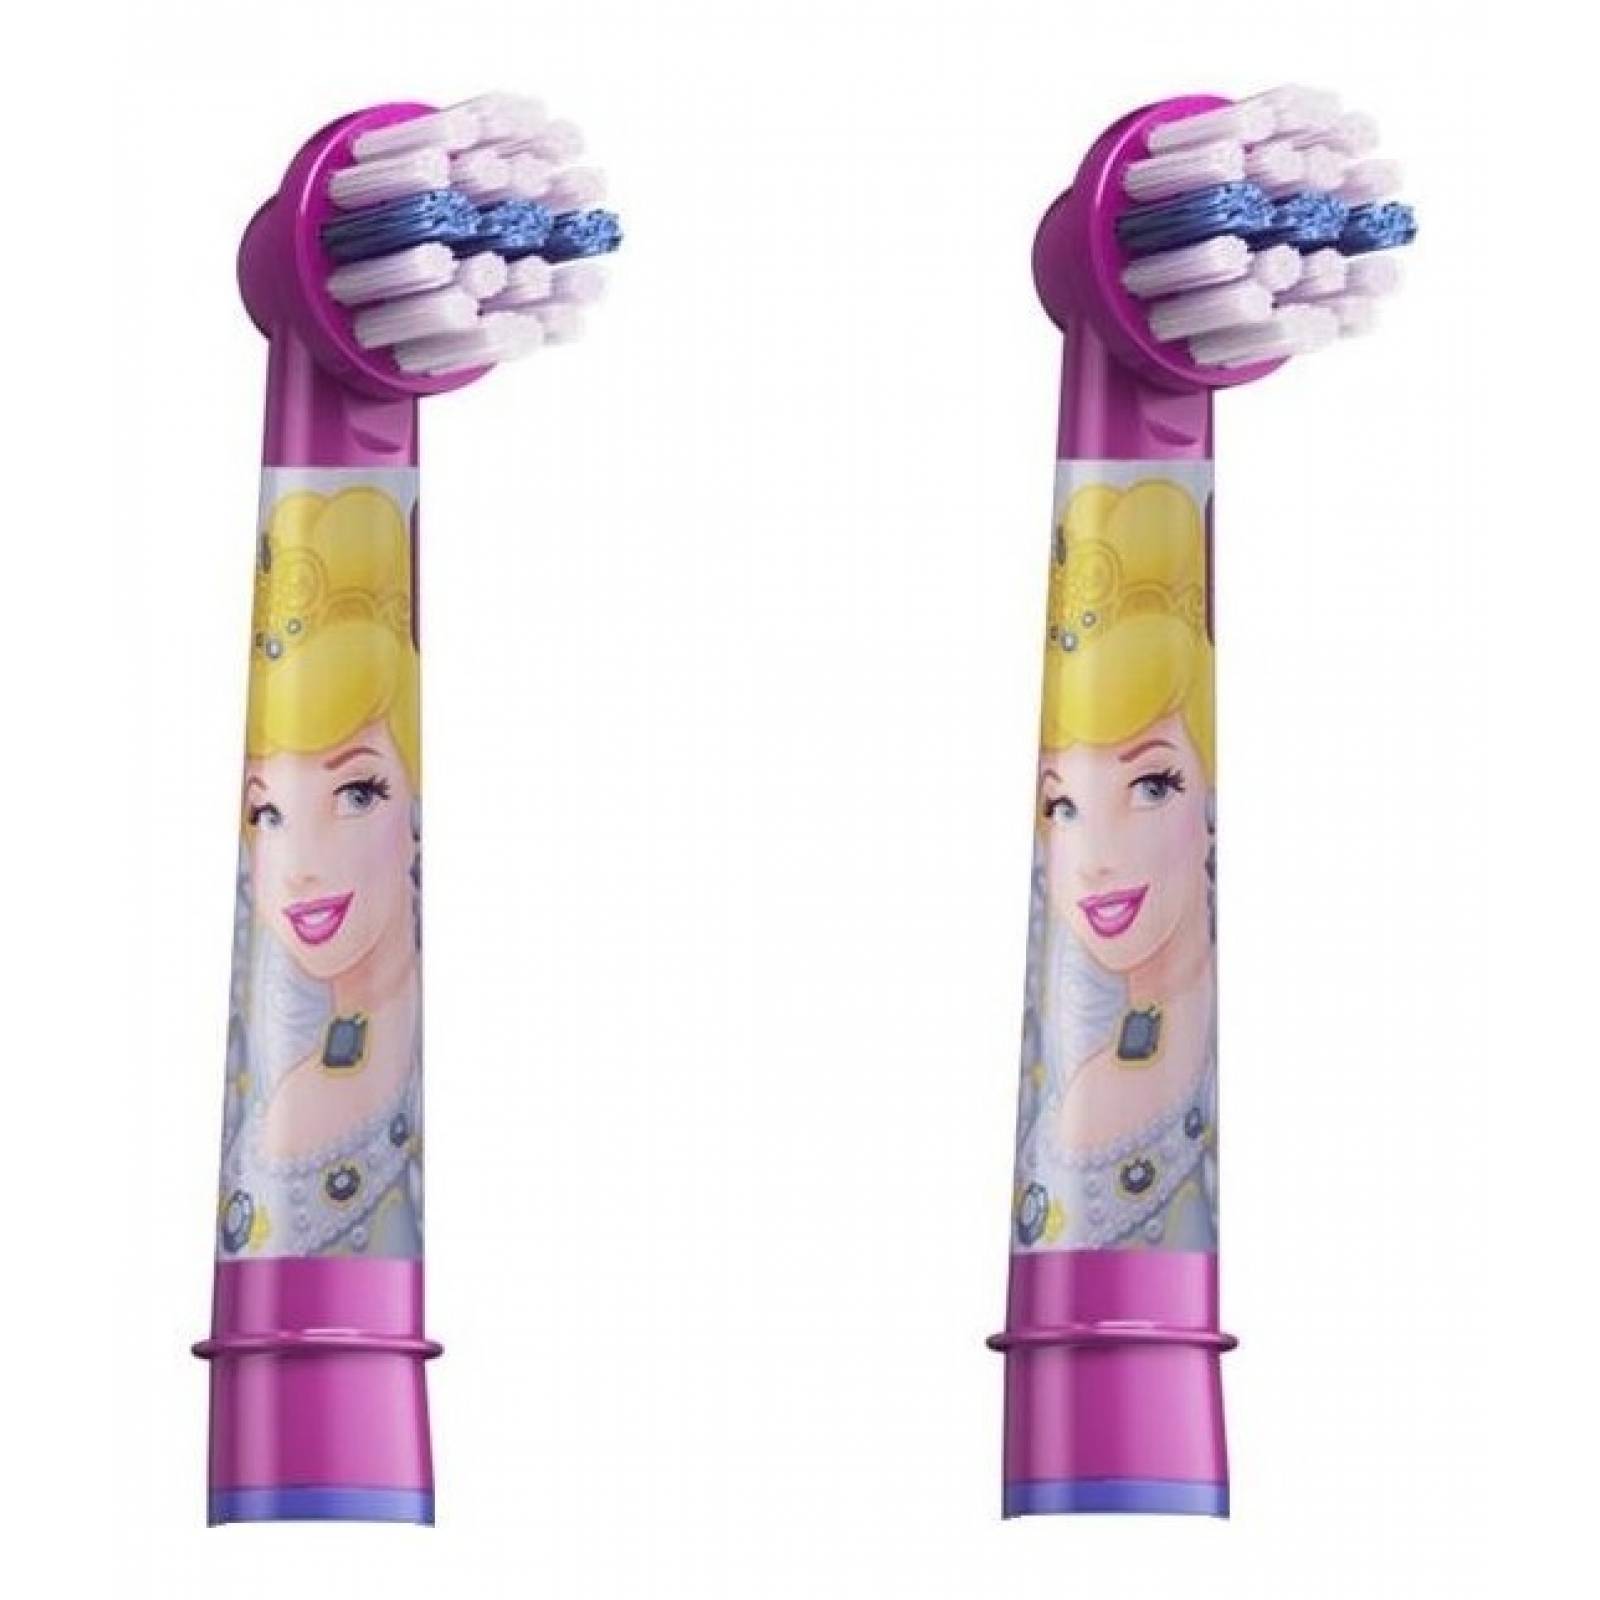 Oral-B Disney Princess Repuestos Cepillo Eléctrico 2 uds